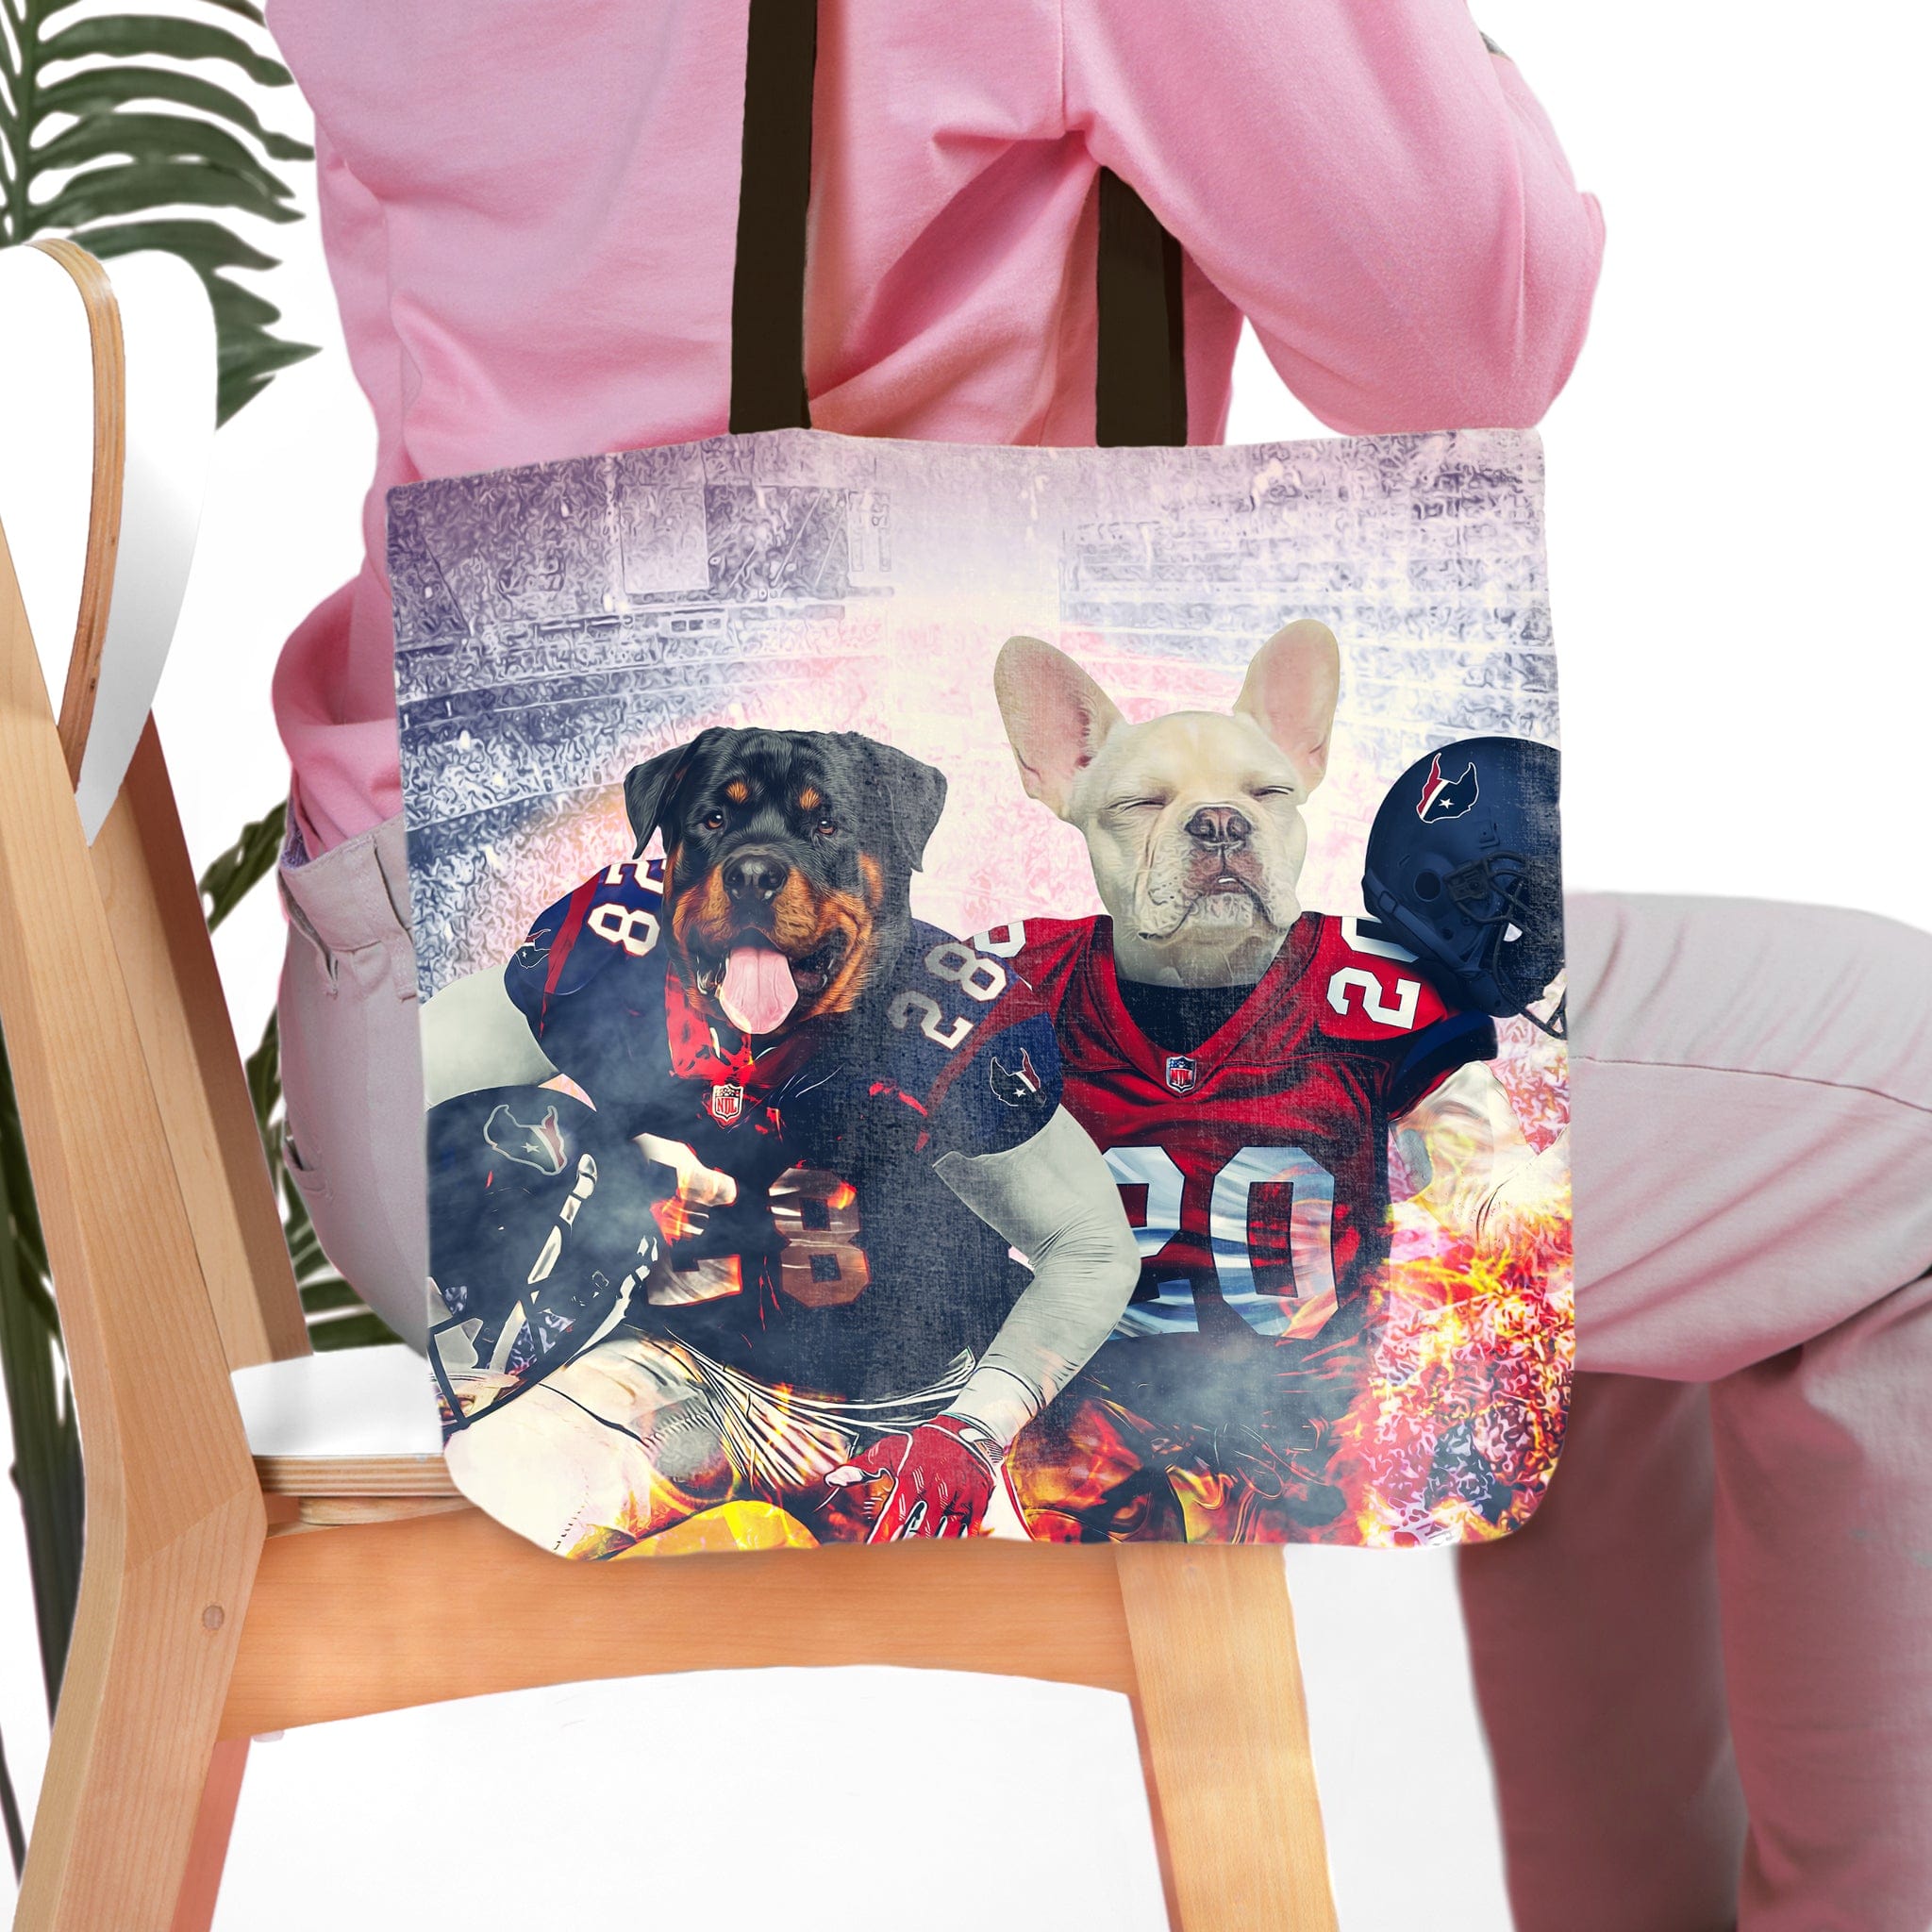 &#39;Houston Doggos&#39; Personalized 2 Pet Tote Bag